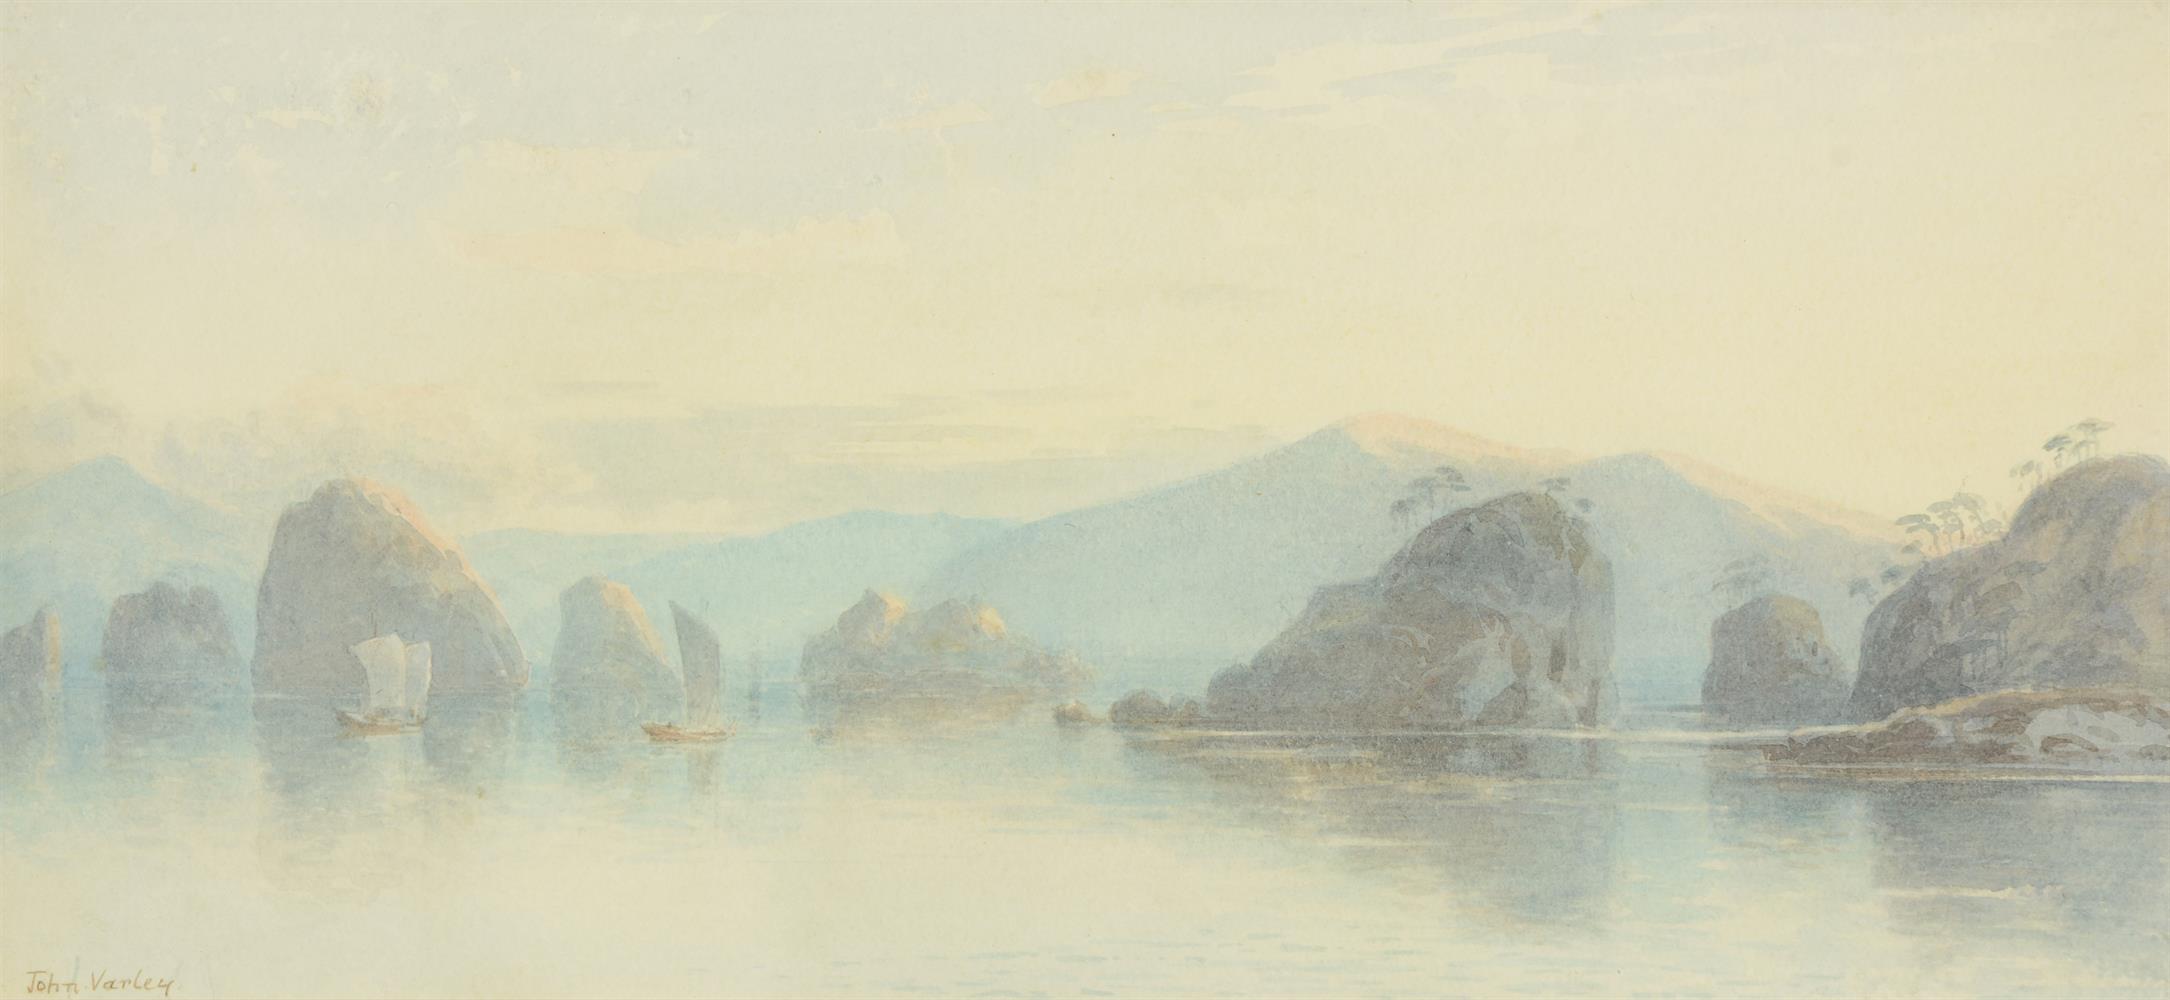 JOHN II VARLEY (BRITISH 1850-1933), CHINESE COASTAL LANDSCAPE - Image 2 of 2